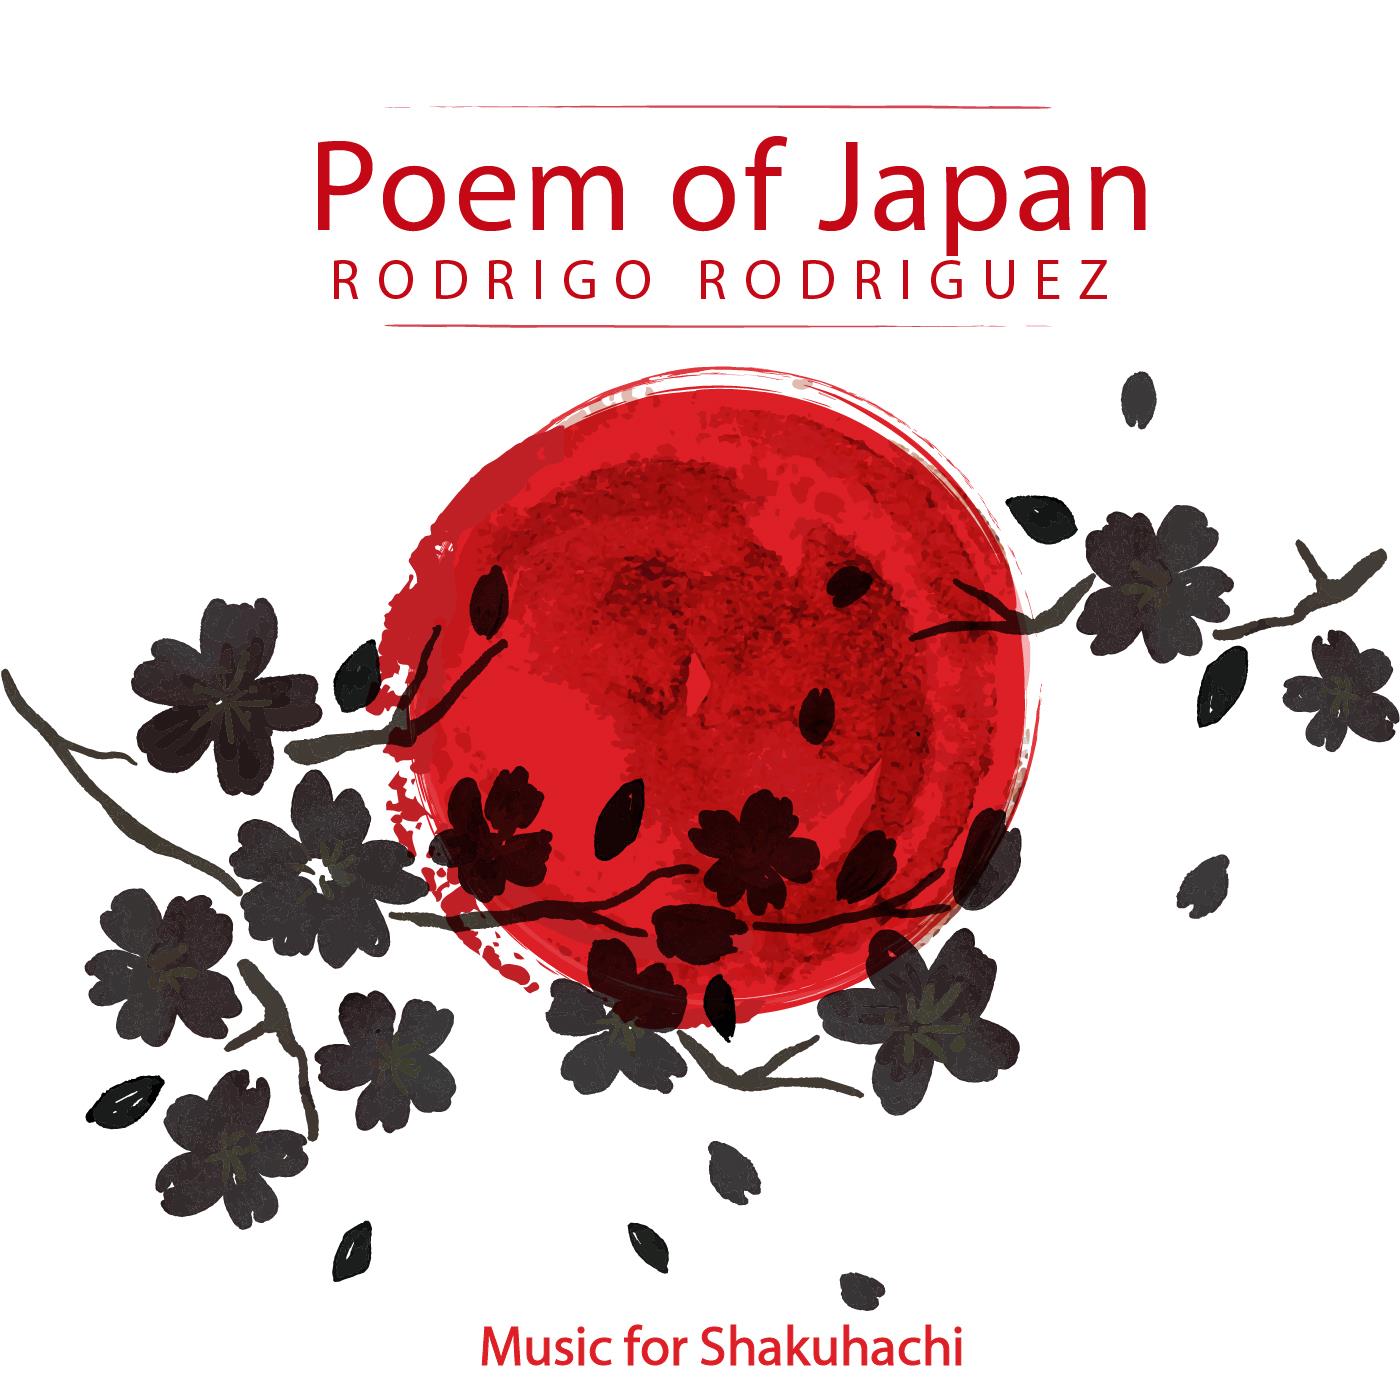 Poem of Japan